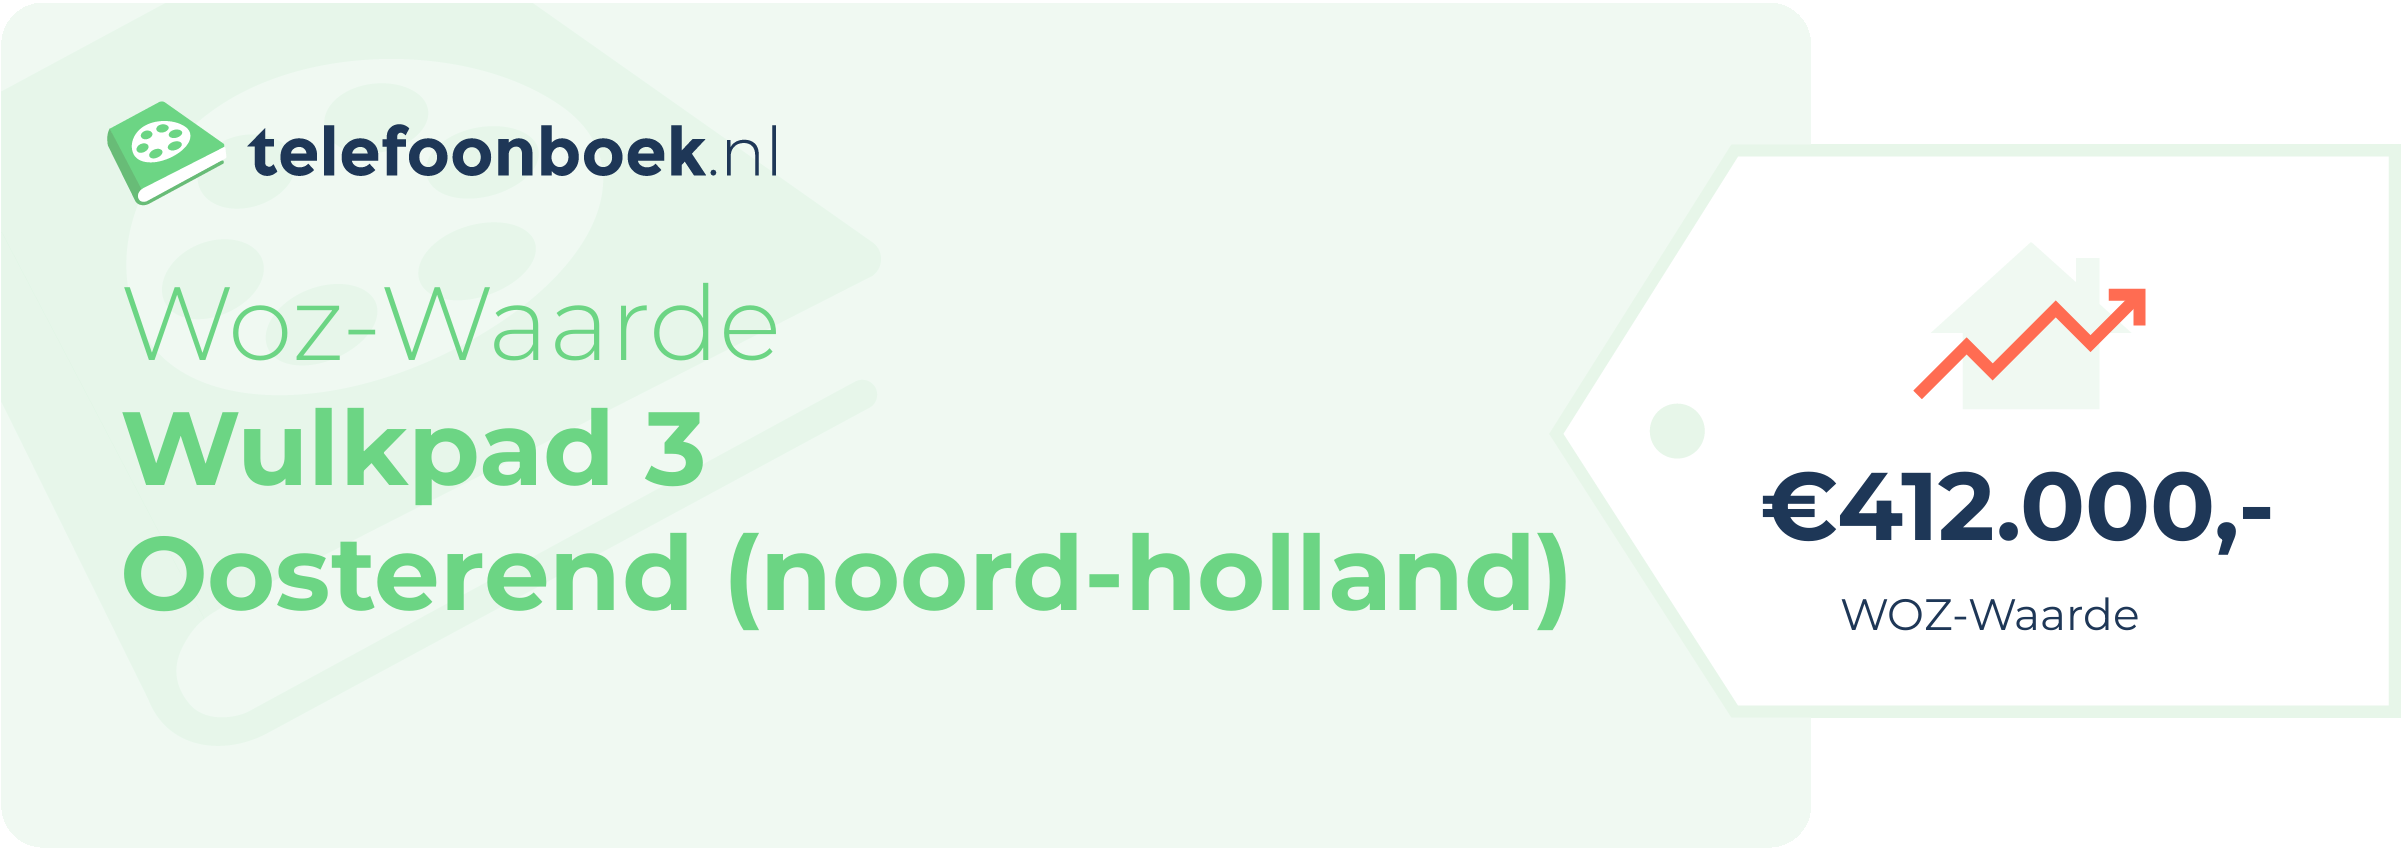 WOZ-waarde Wulkpad 3 Oosterend (Noord-Holland)